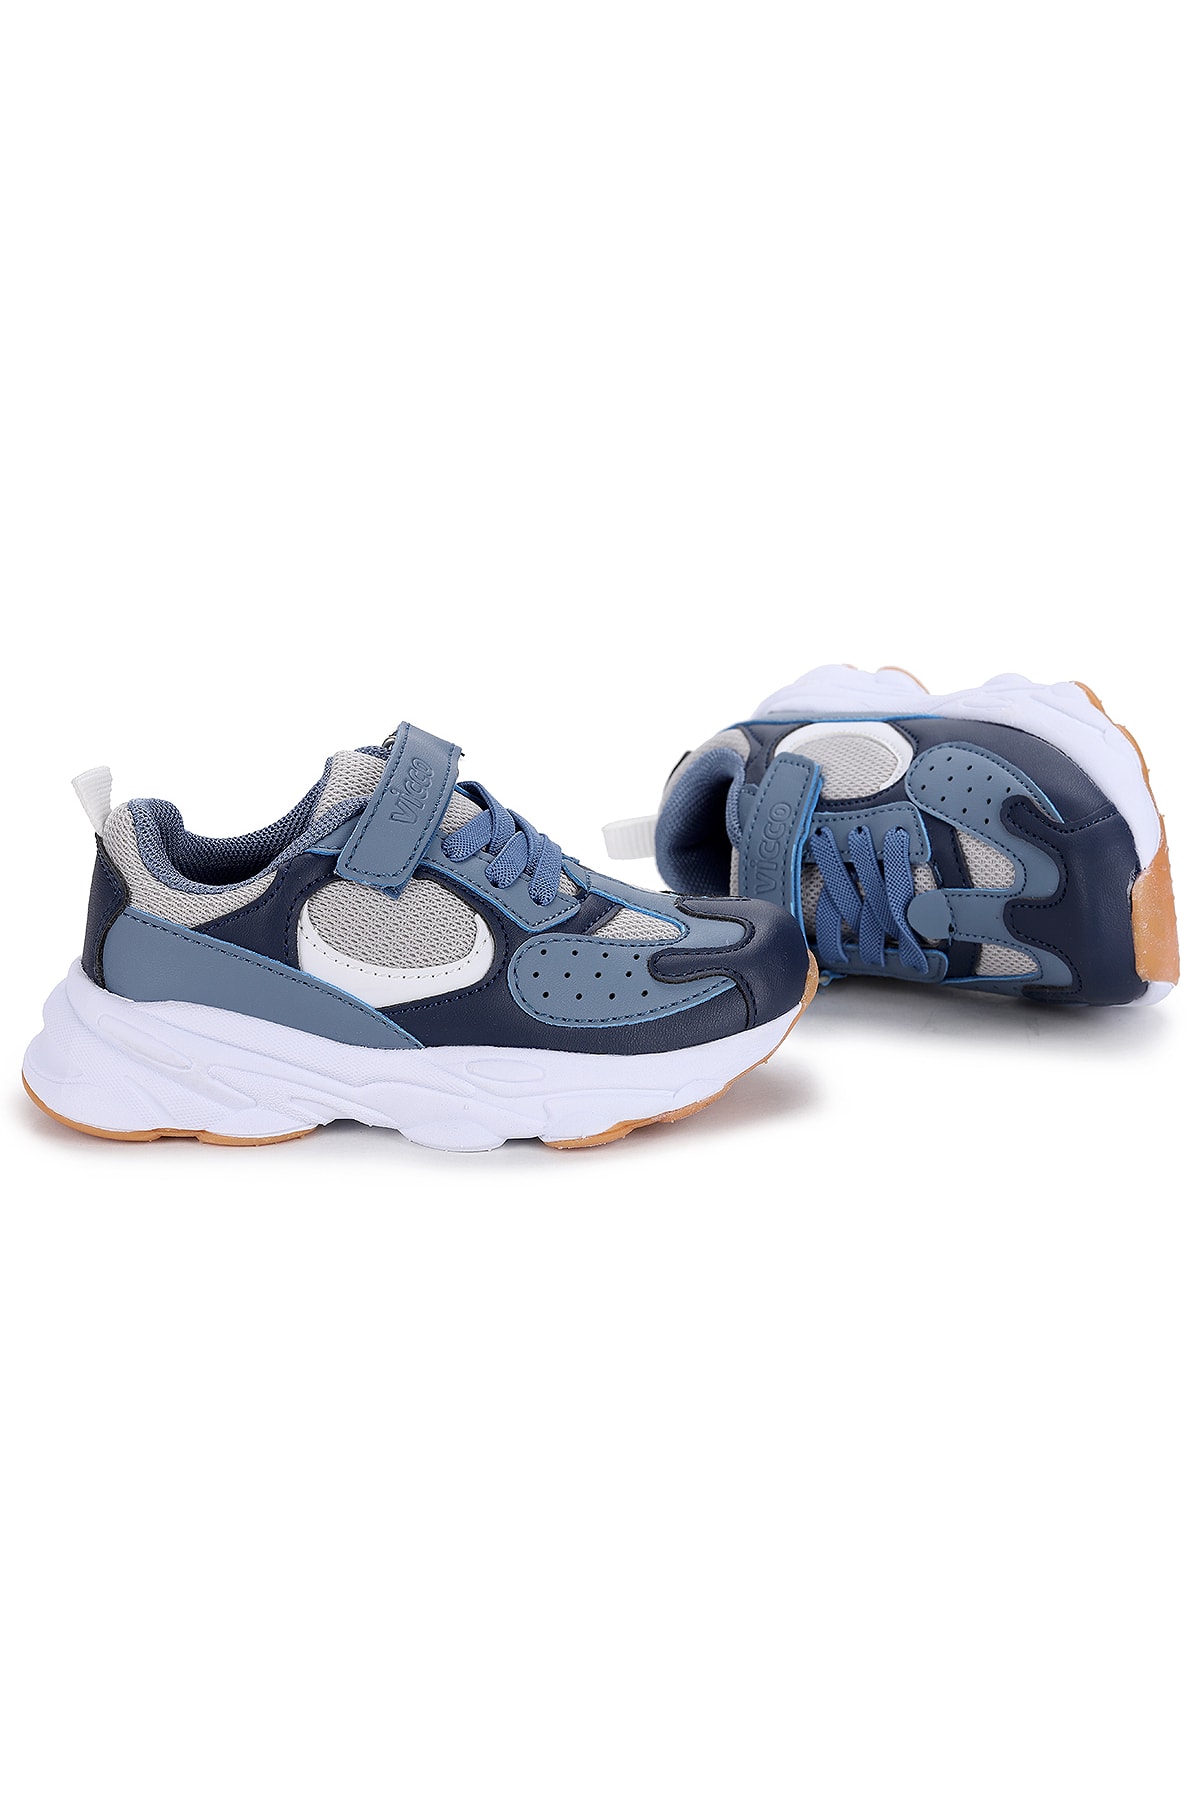 Vicco Mavi - 346.21y.118 Niro Cırtlı Kız/erkek Çocuk Spor Ayakkabı